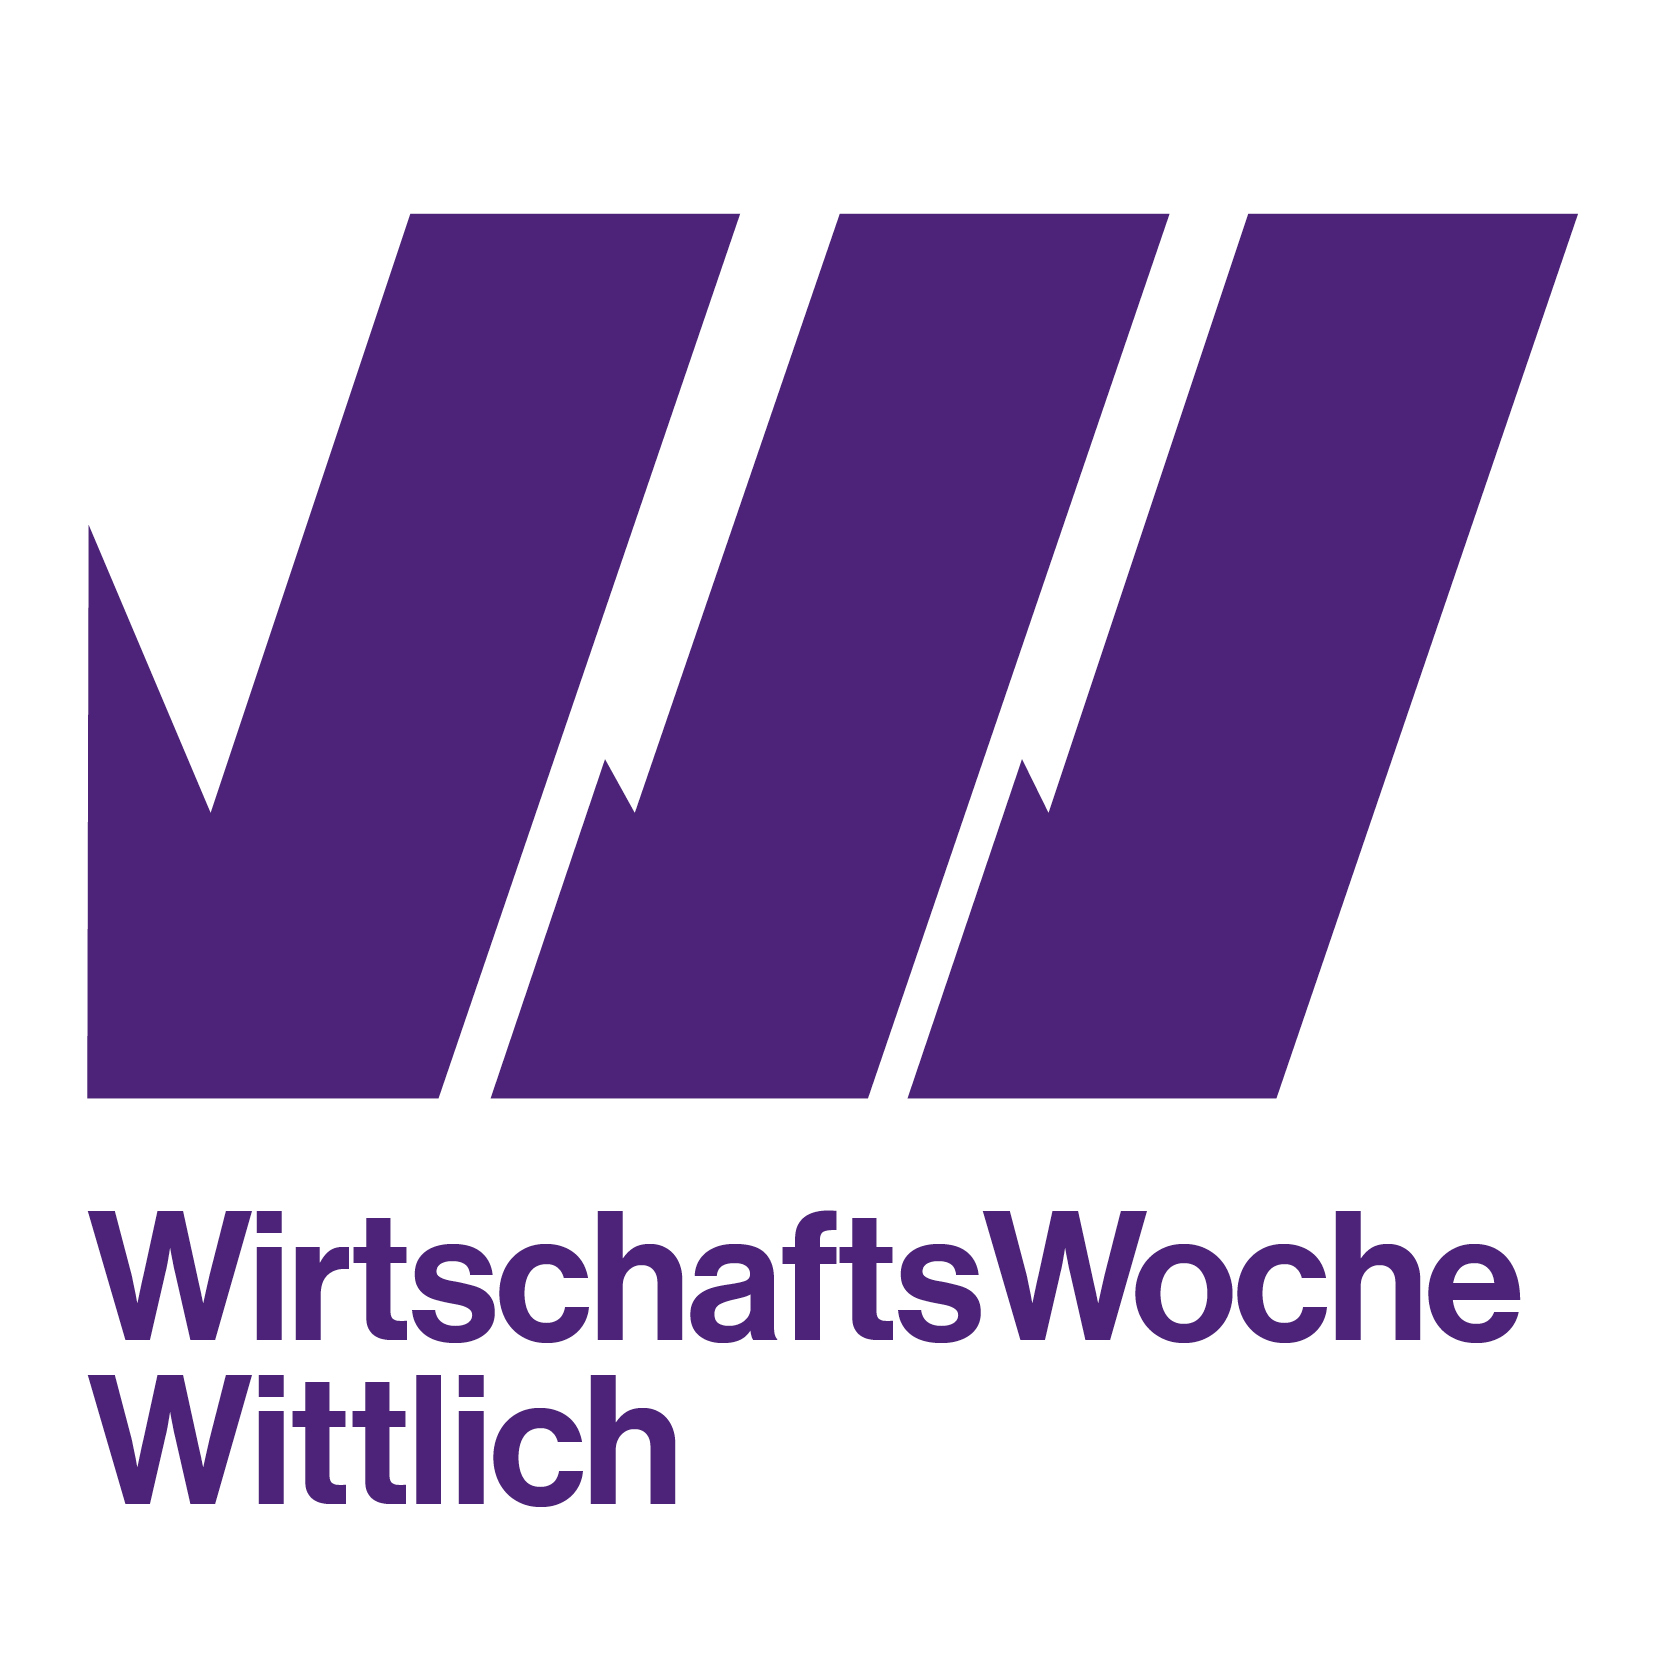 Wirtschaftswoche Wittlich 